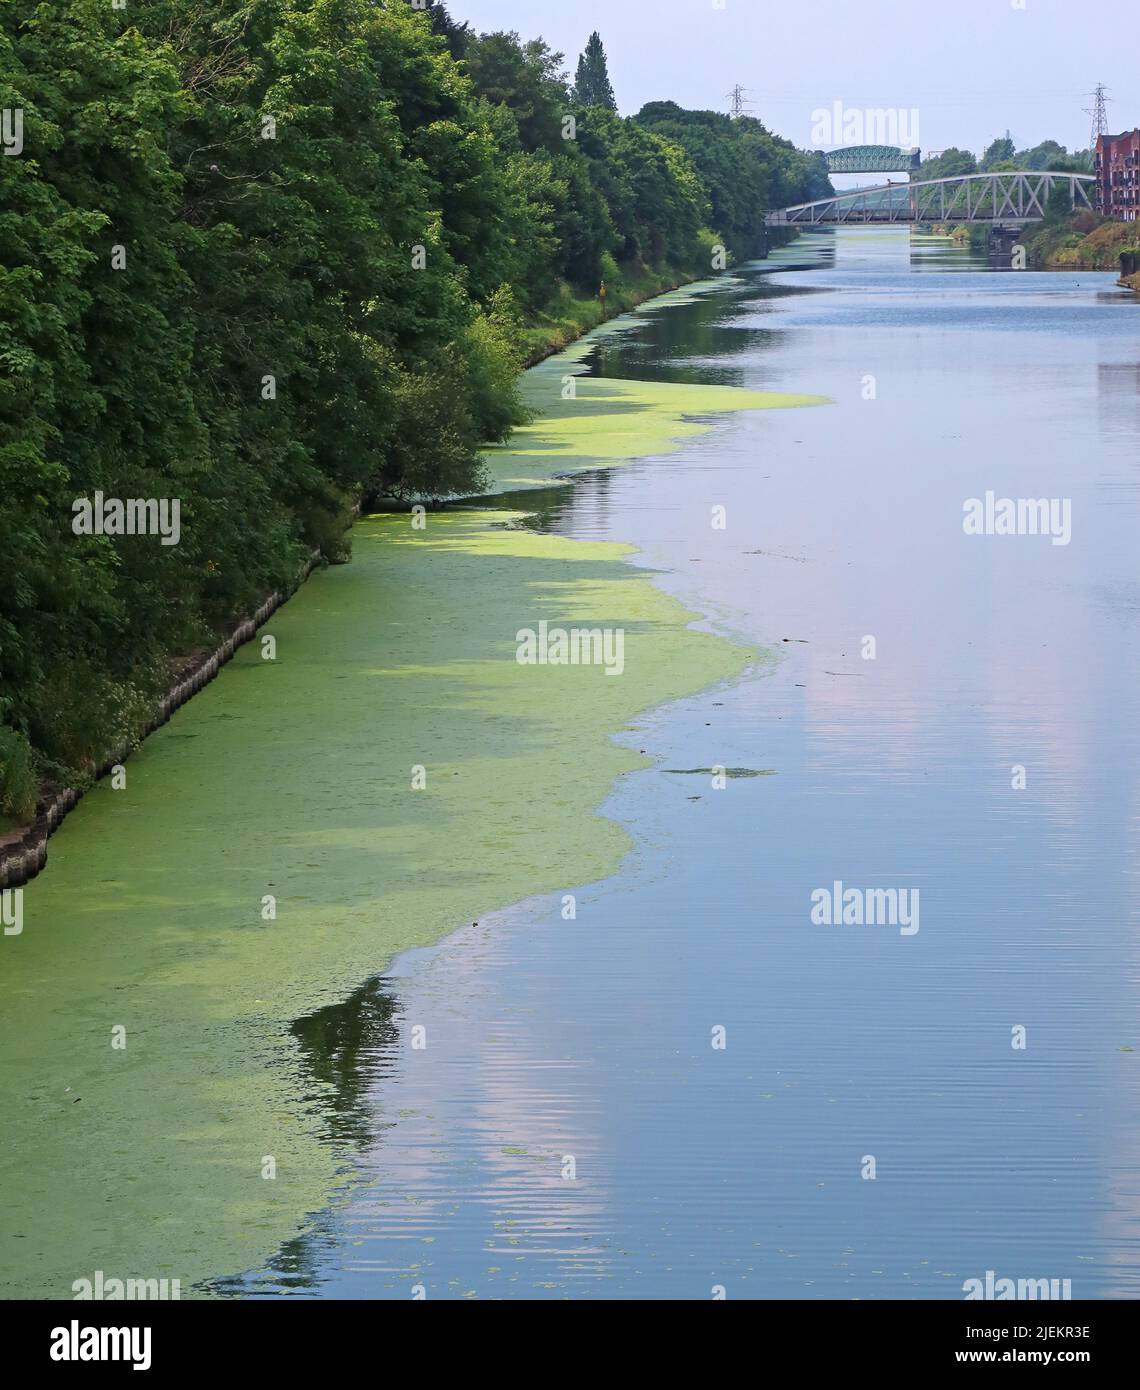 Algue , prolifération d'algues dans le canal de Manchester Ship, London Road (A49) Swingbridge, Stockton Heath, Warrington, Cheshire, Angleterre, ROYAUME-UNI, WA4 6RW Banque D'Images